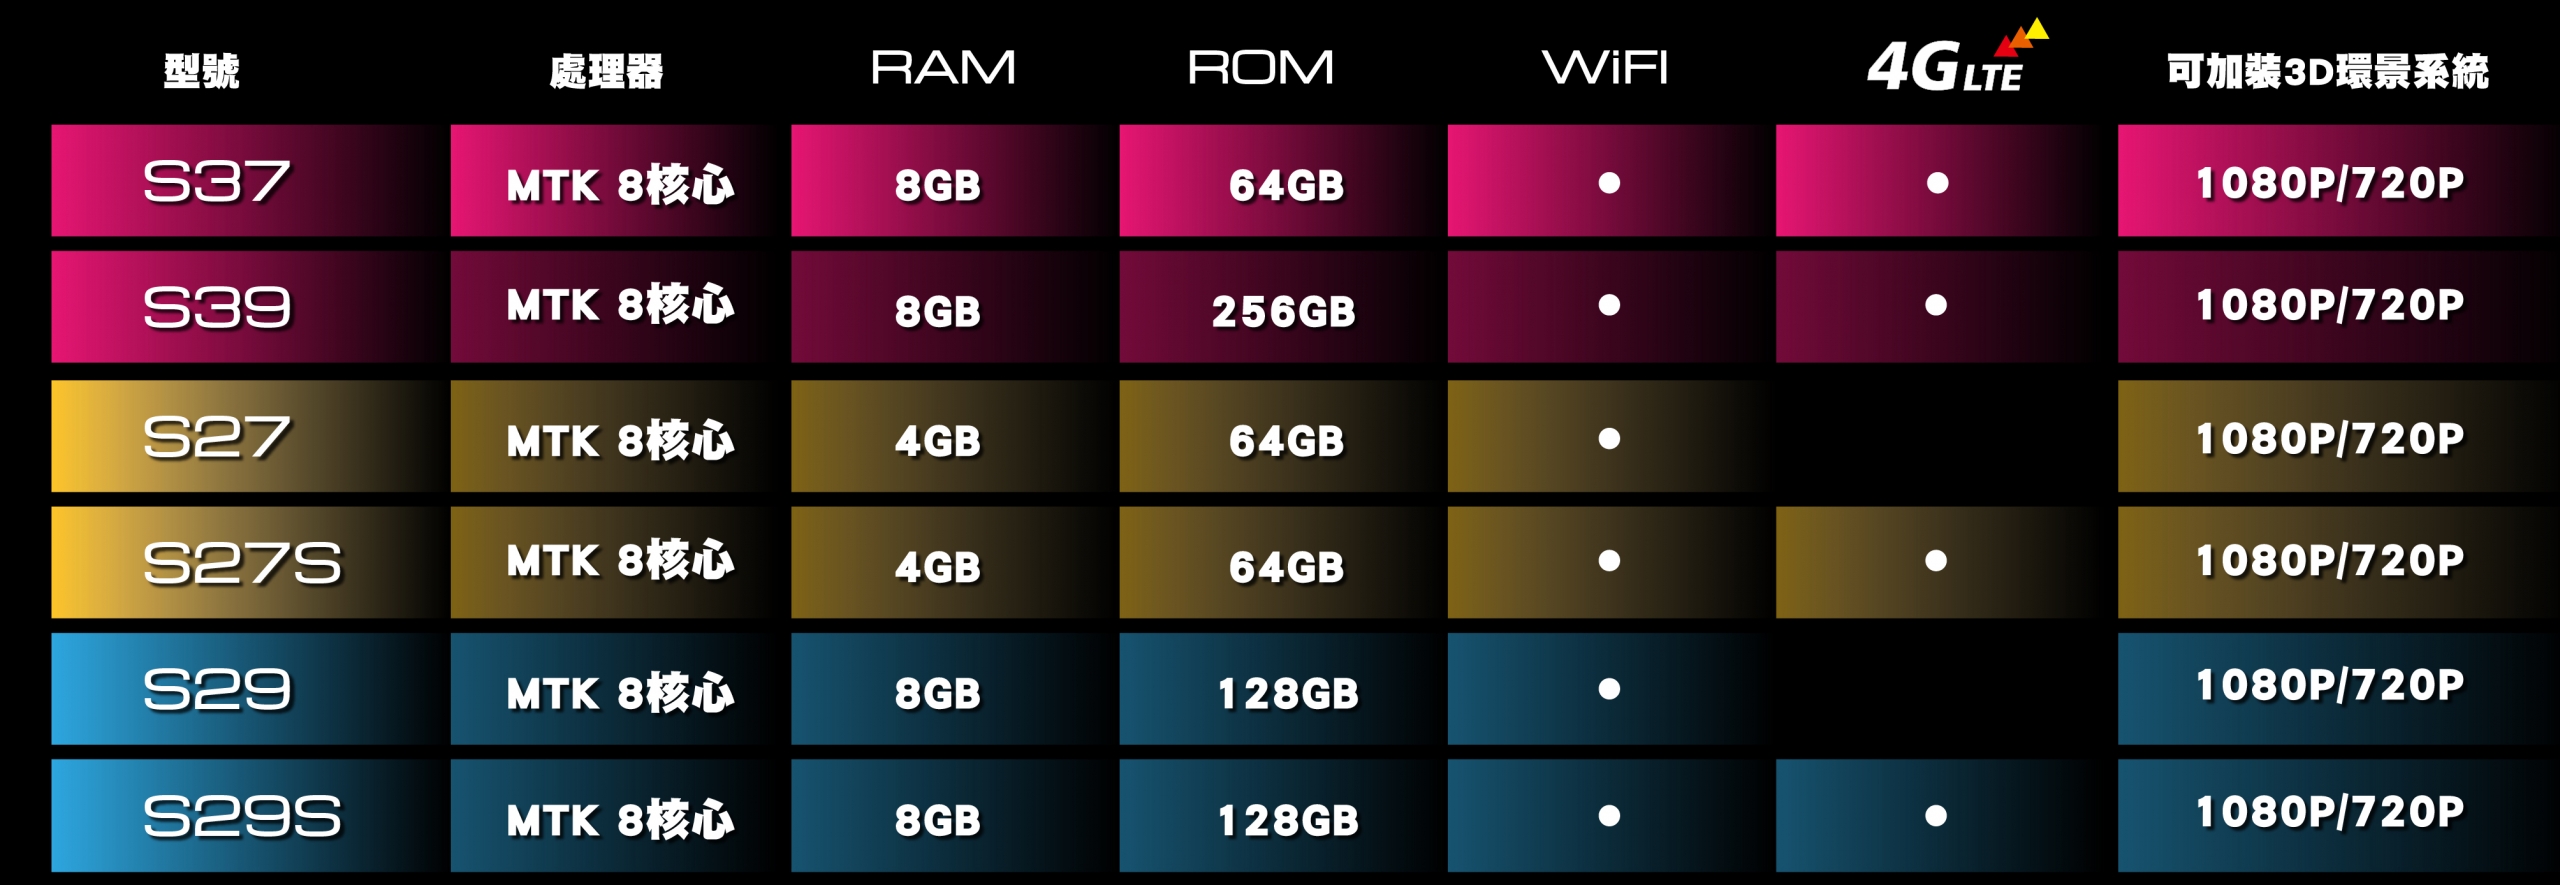 S12.3吋螢幕升級系列規格表